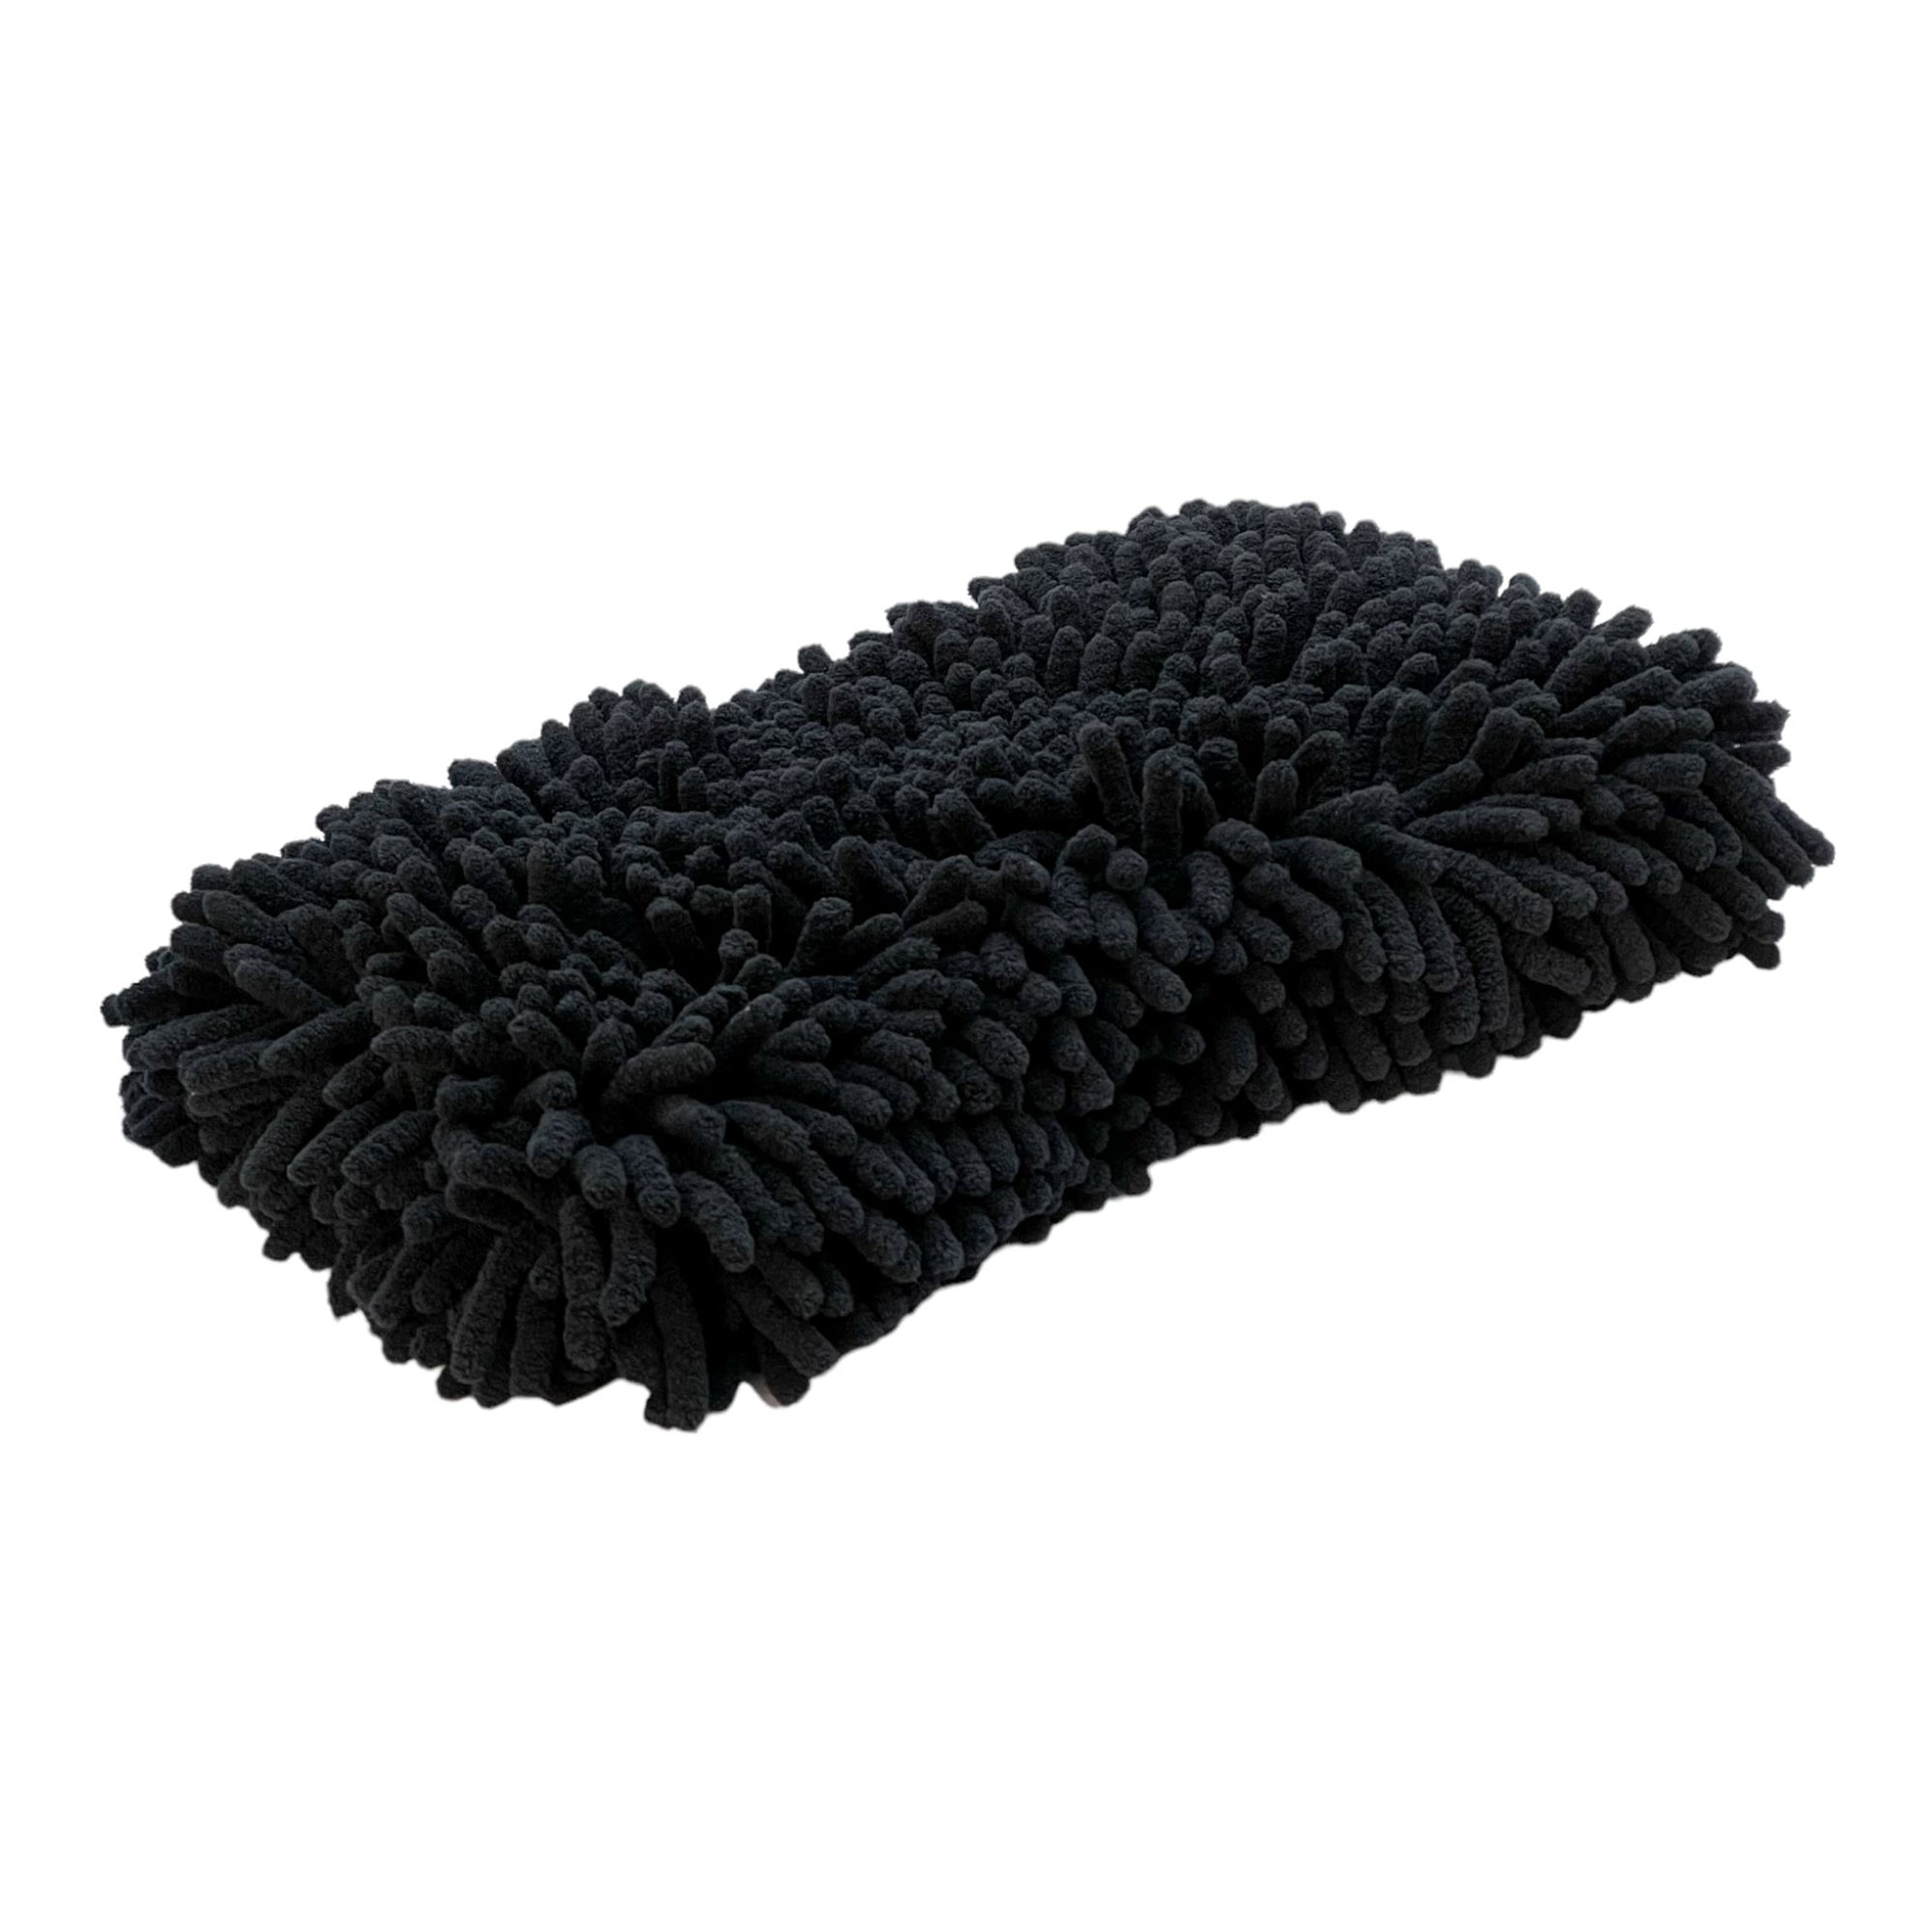 Black Microfiber Chenille Wash Pad - The Perfect Accessory for a Spotl ...